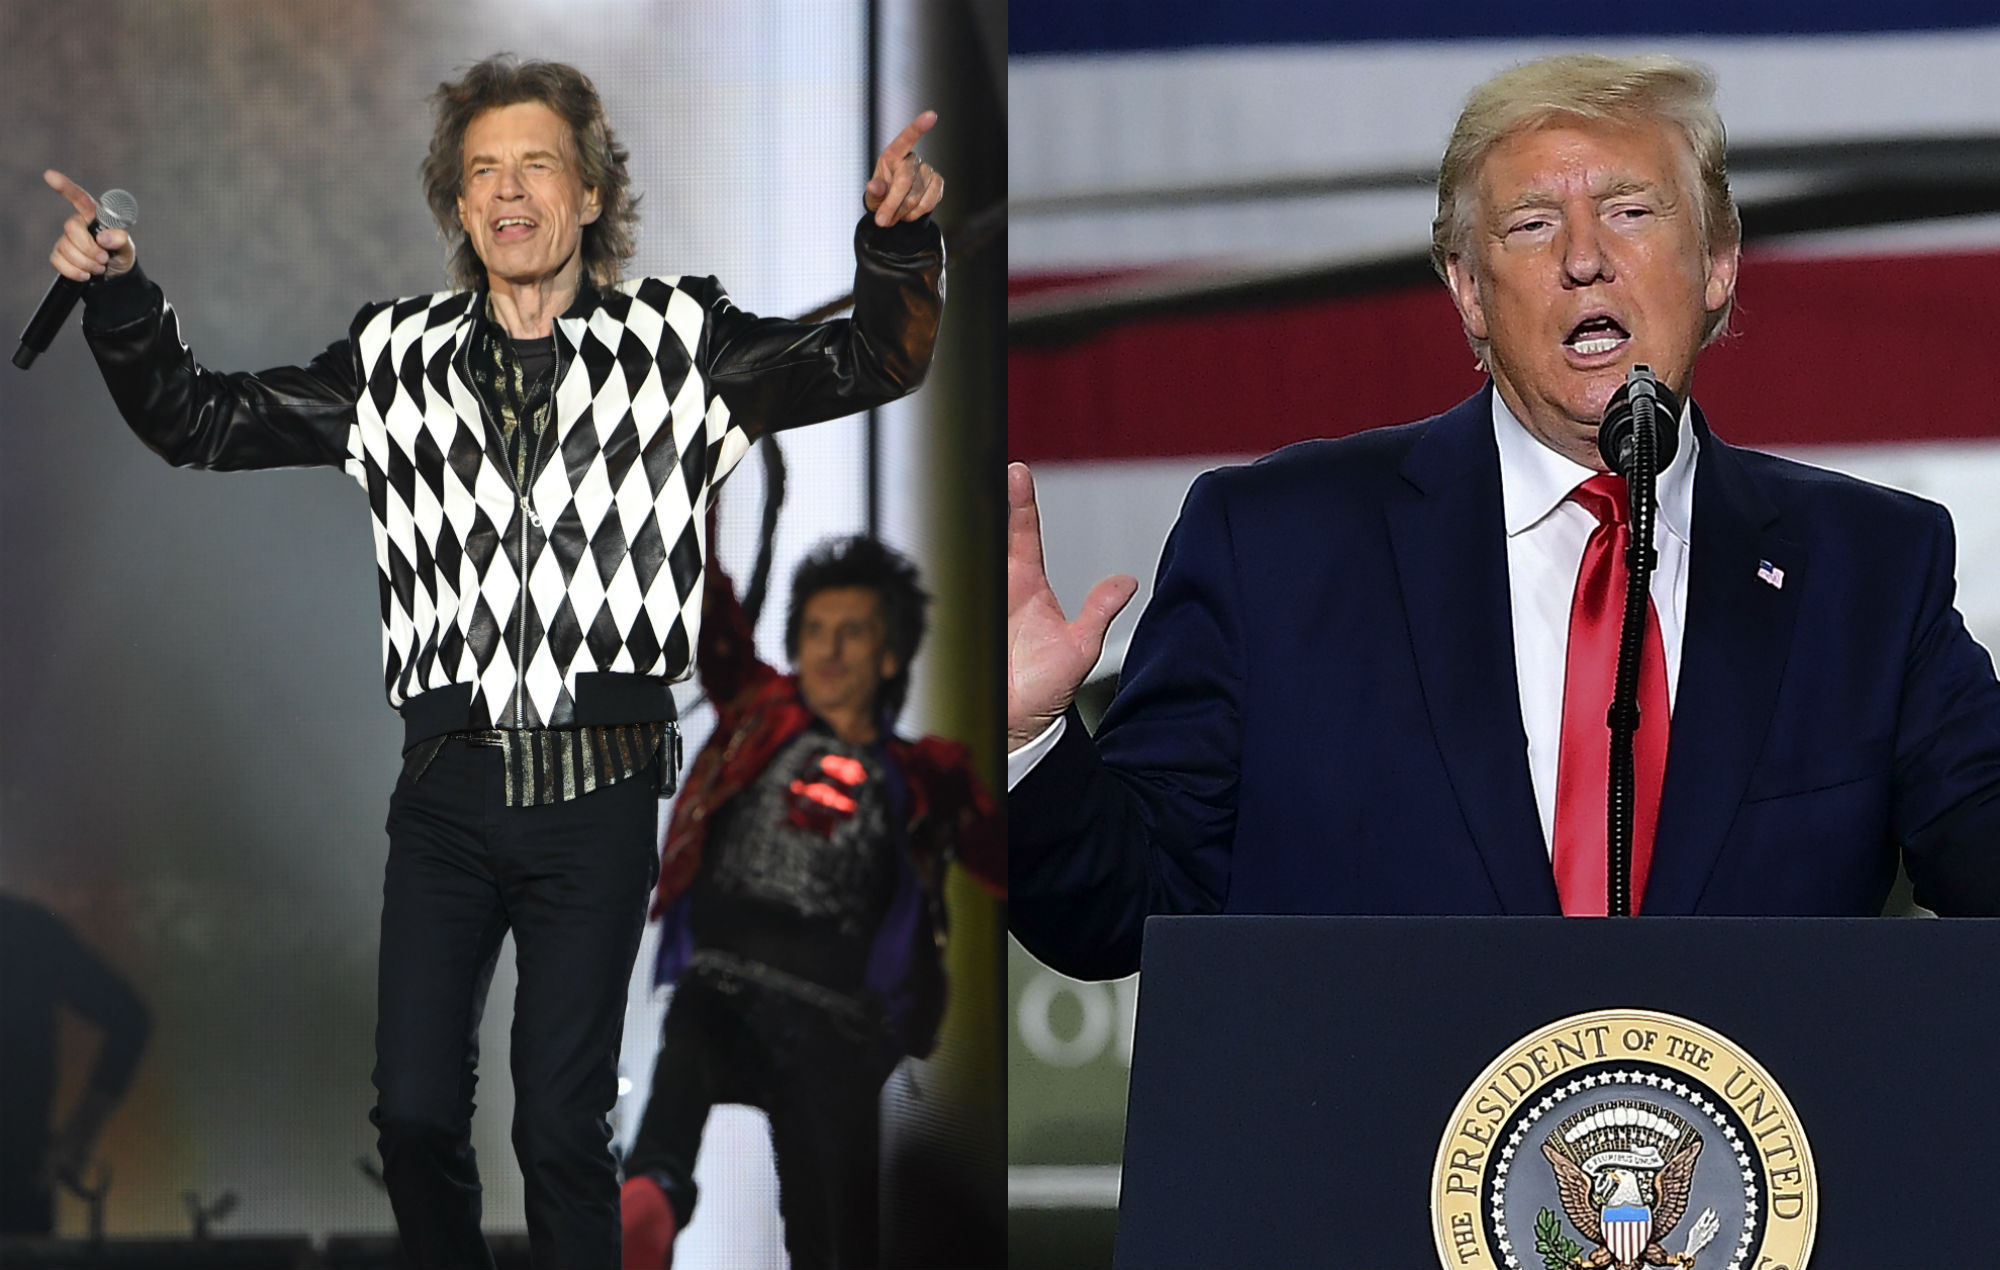 Rolling Stones пригрозили Трампу судом за использование их песен на выборах